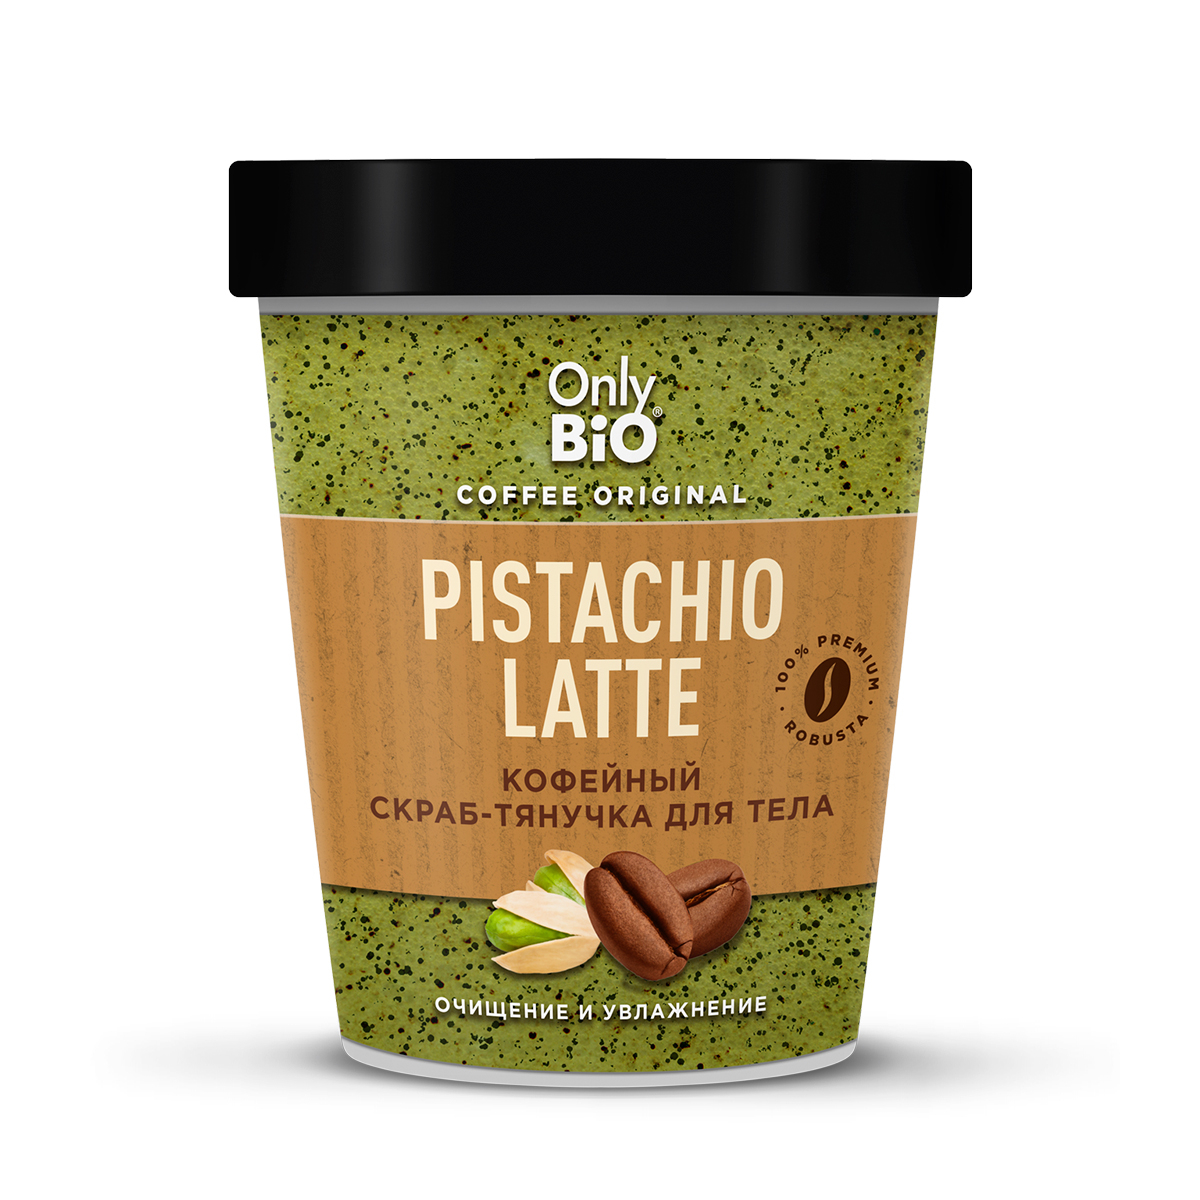 Скраб-тянучка для тела Only Bio Coffee Original Pistachio Latte кофейный, 230 мл